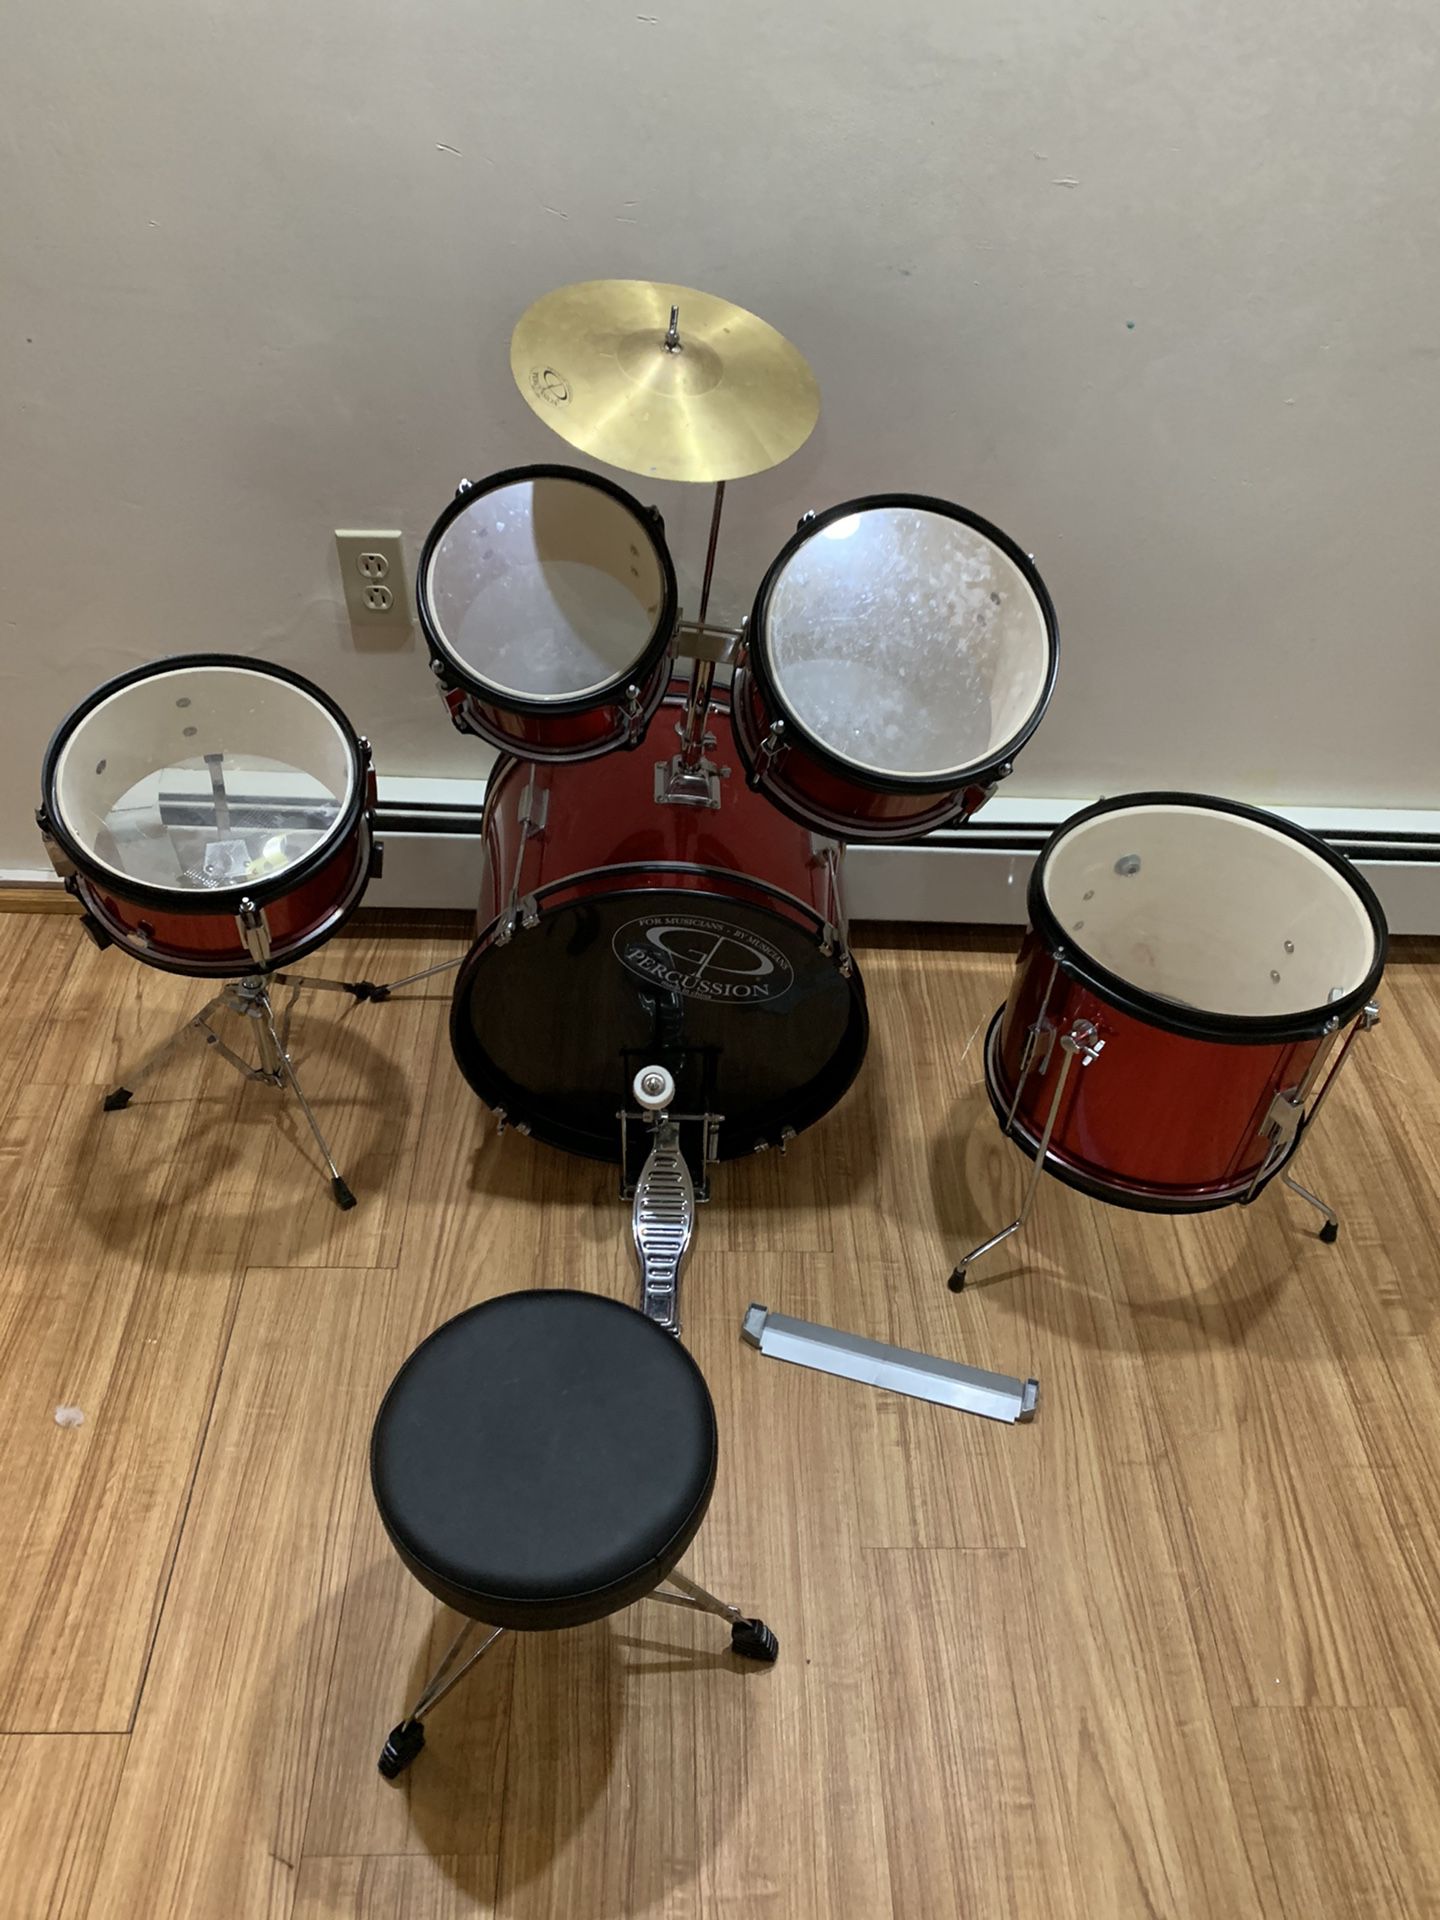 Drump set( negotiable)